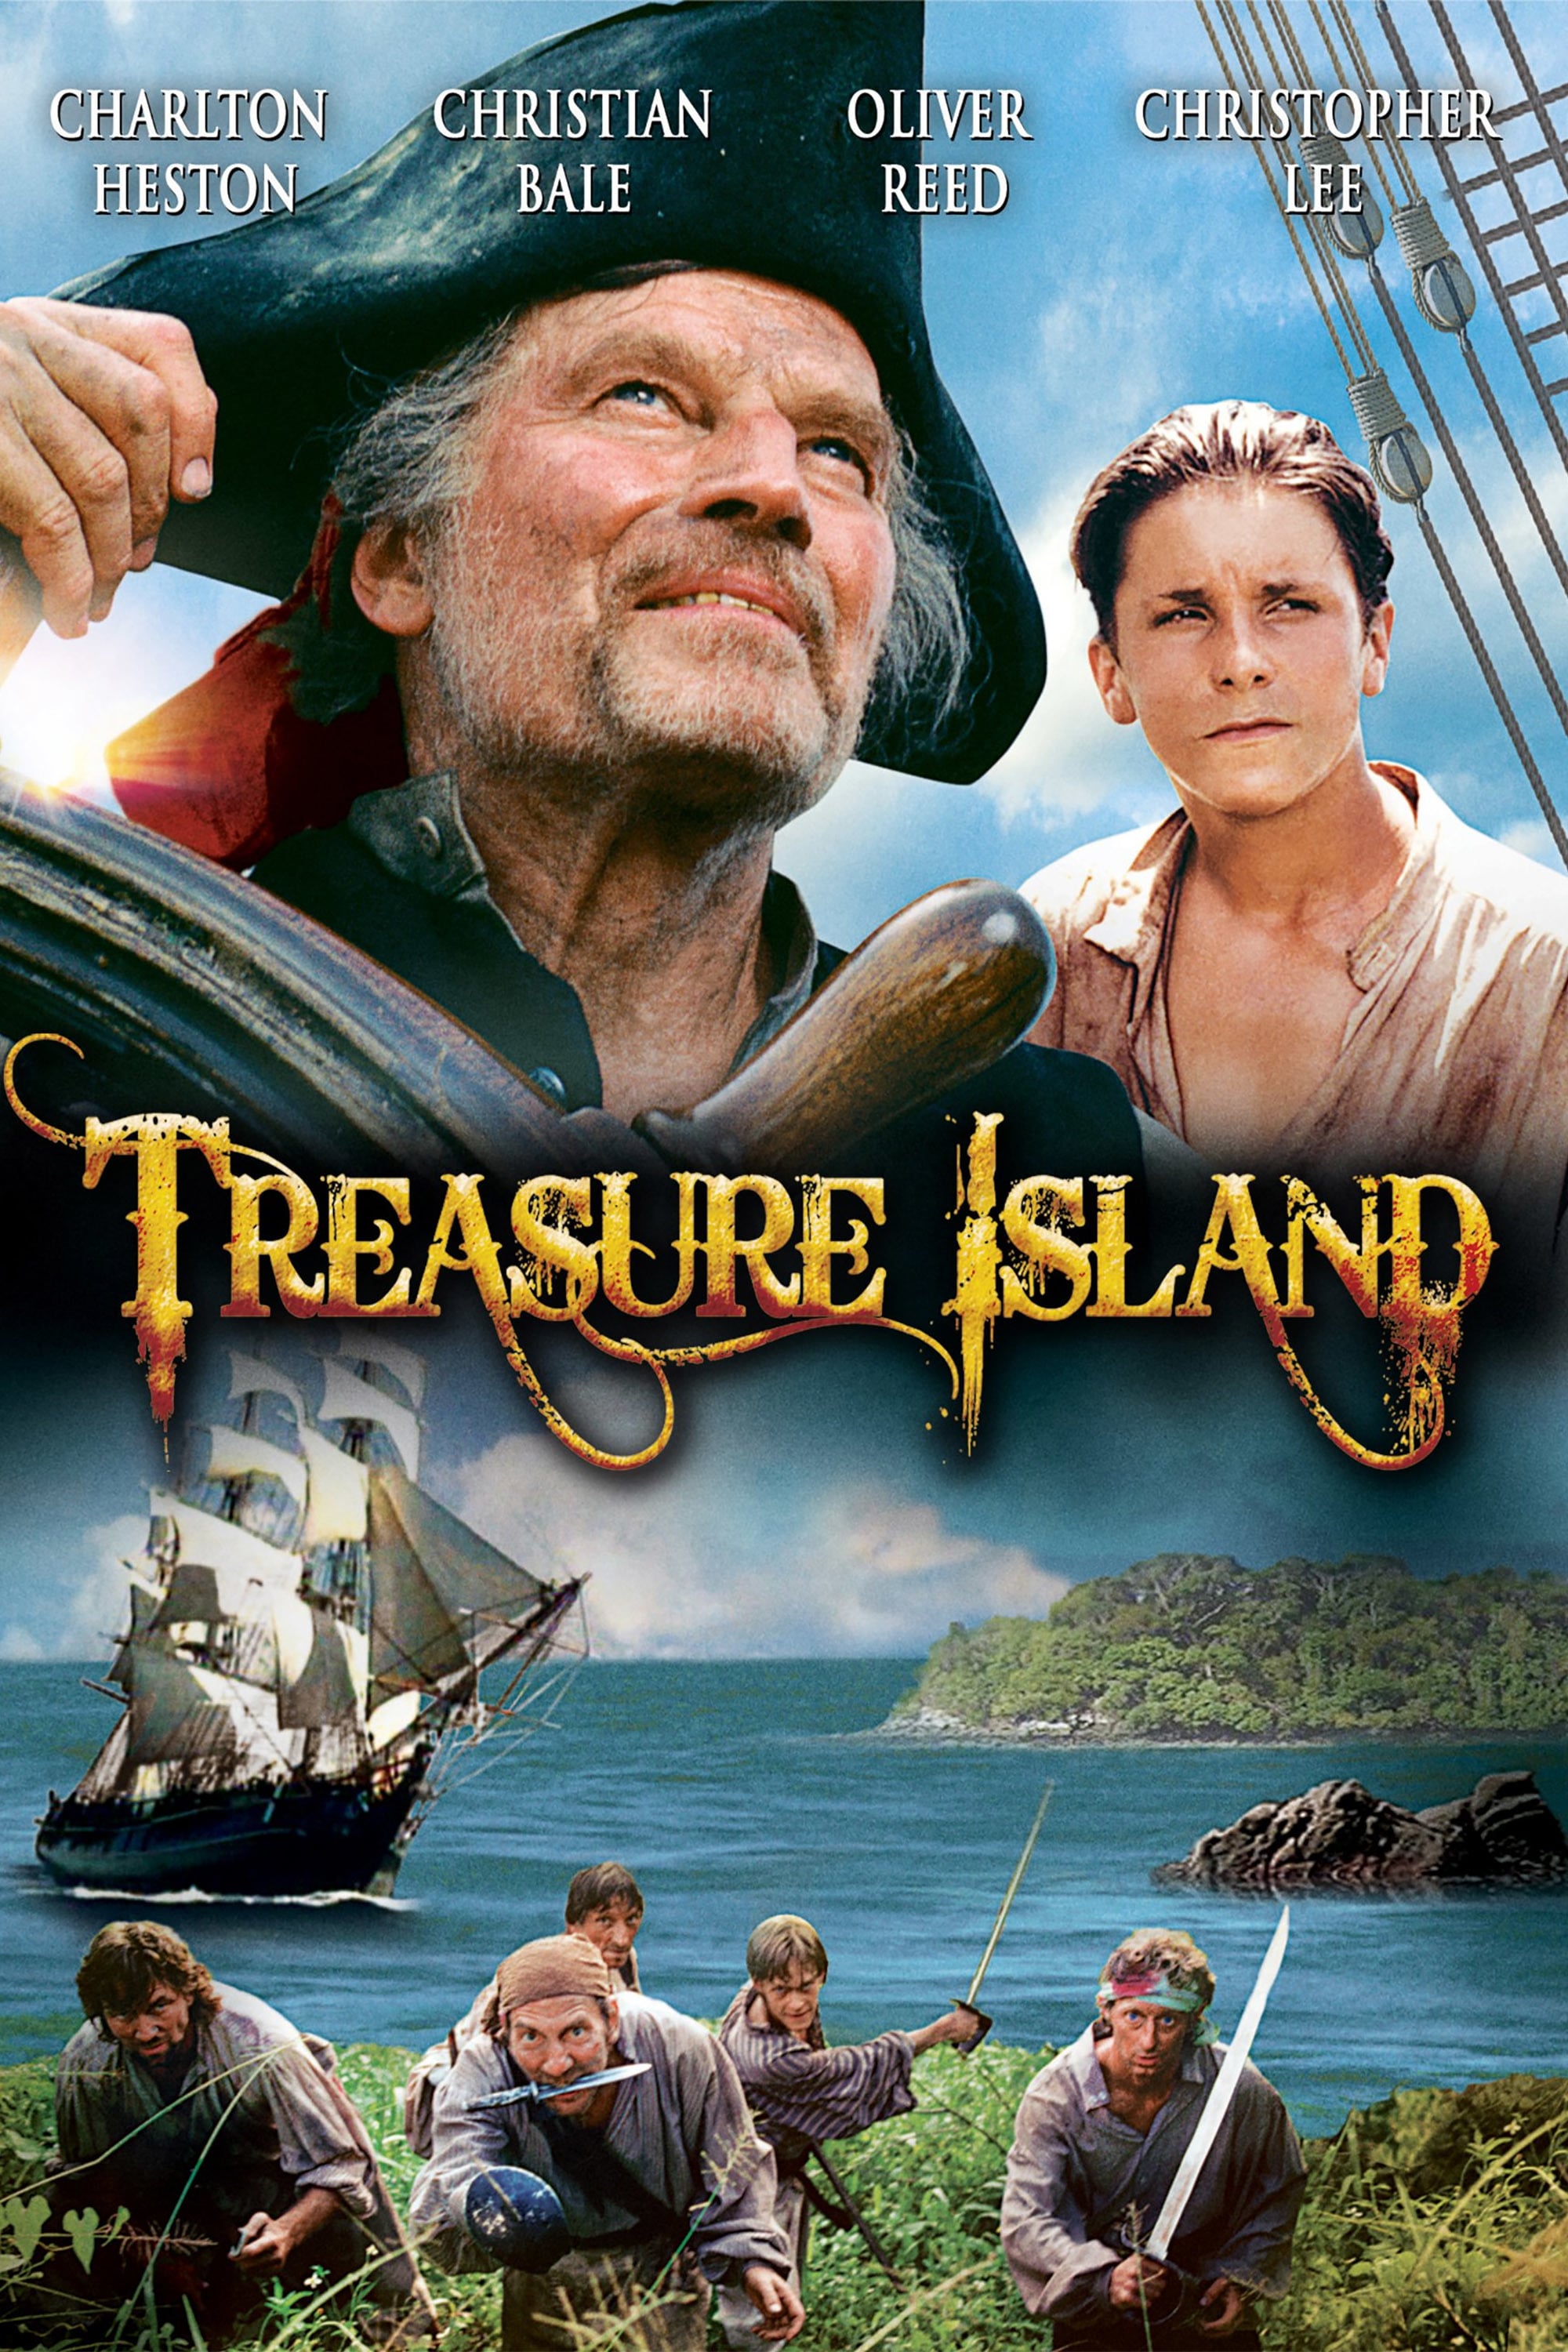 Island сокровищ. Кристиан Бейл остров сокровищ. Остров сокровищ / Treasure Island (1990). Остров сокровищ Чарлтон Хестон.